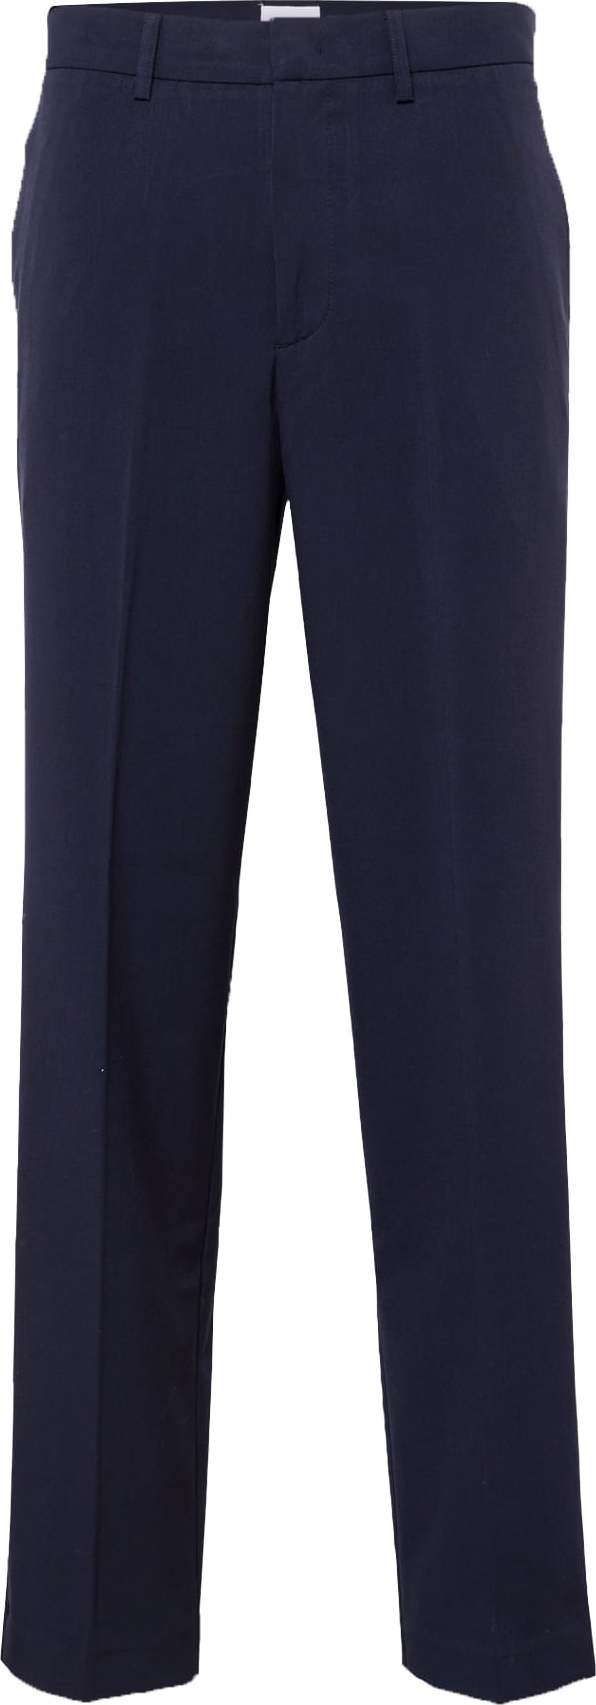 Kalhoty s puky lindbergh námořnická modř